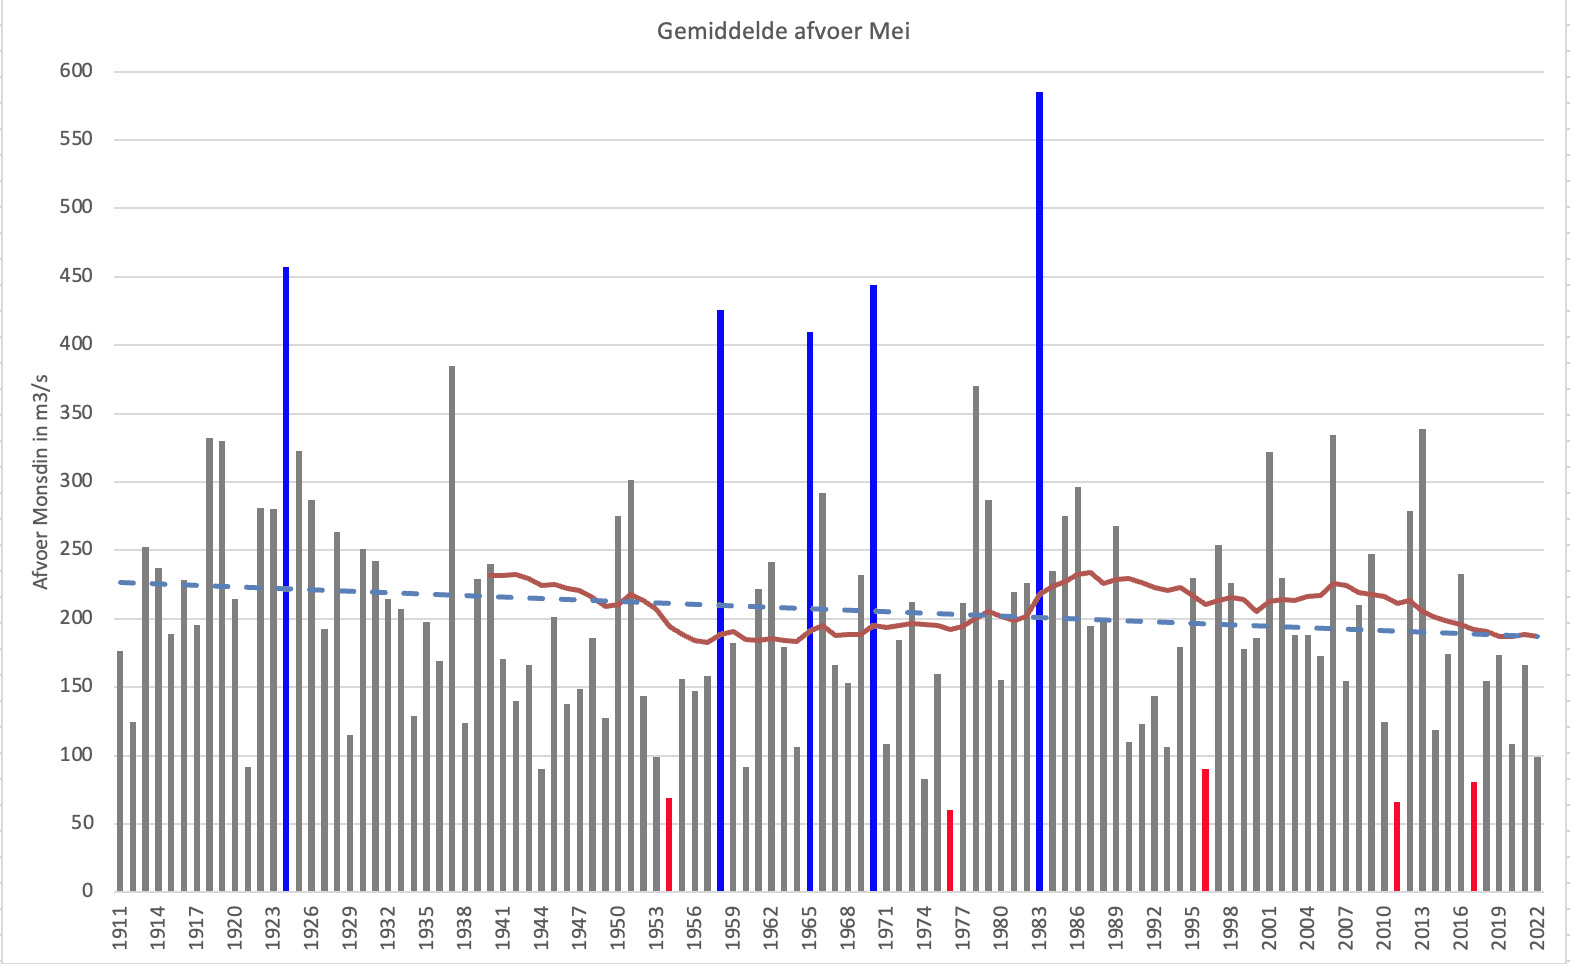 Gemiddelde Maasafvoer (bij Monsin) in mei vanaf 1911. In blauw de 5 jaren met de hoogste afvoer, in rood de laagste. De blauwe streepjeslijn is de trendlijn, de rode lijn het 30-jarig gemiddelde.